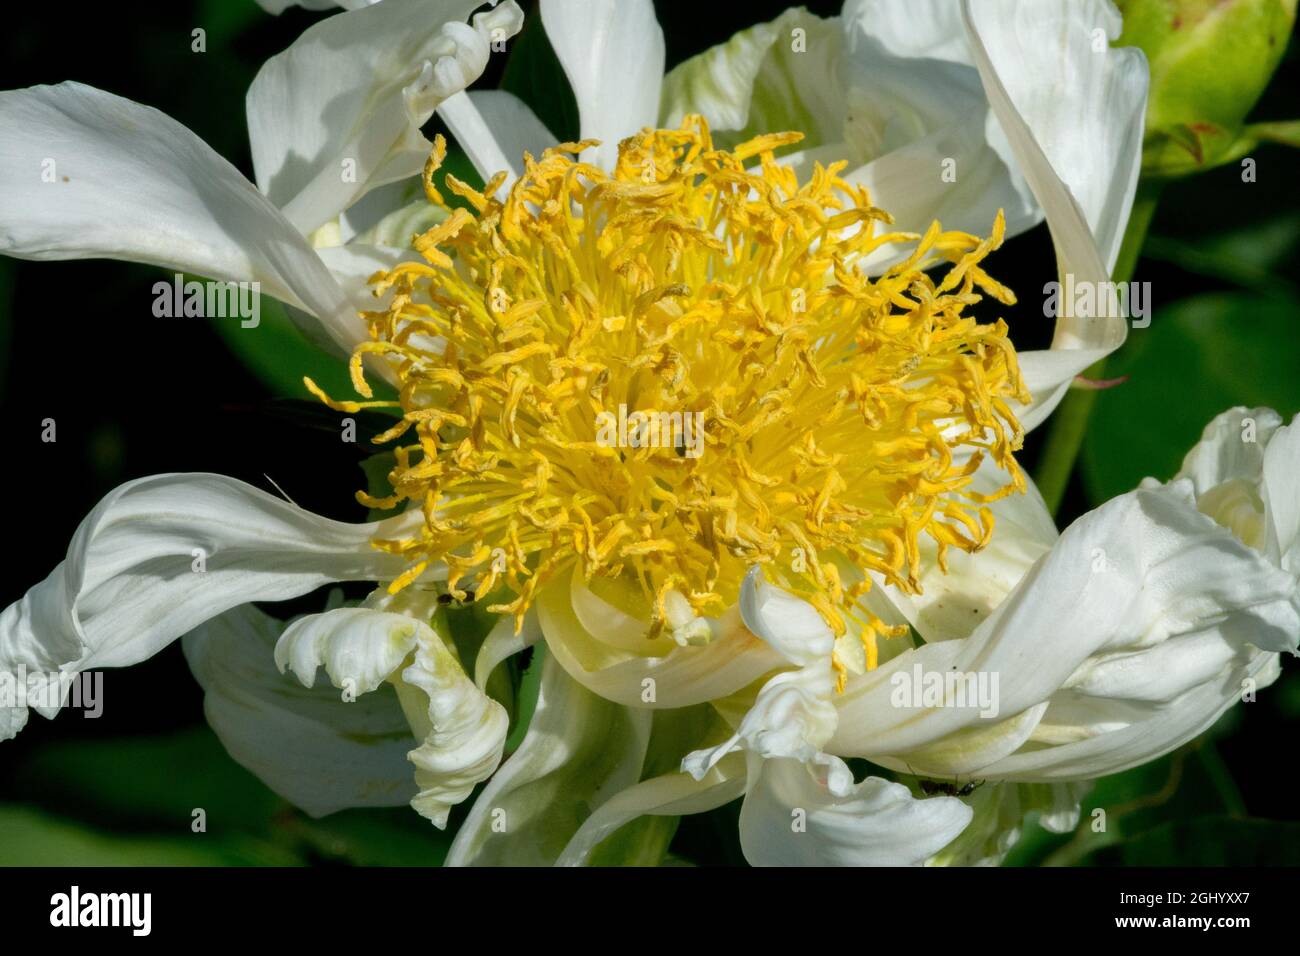 White Peony flower¨Spider Green' Paeonia lactiflora, petali di fiori stretti, scanalati e ritorti, stamens gialli Foto Stock